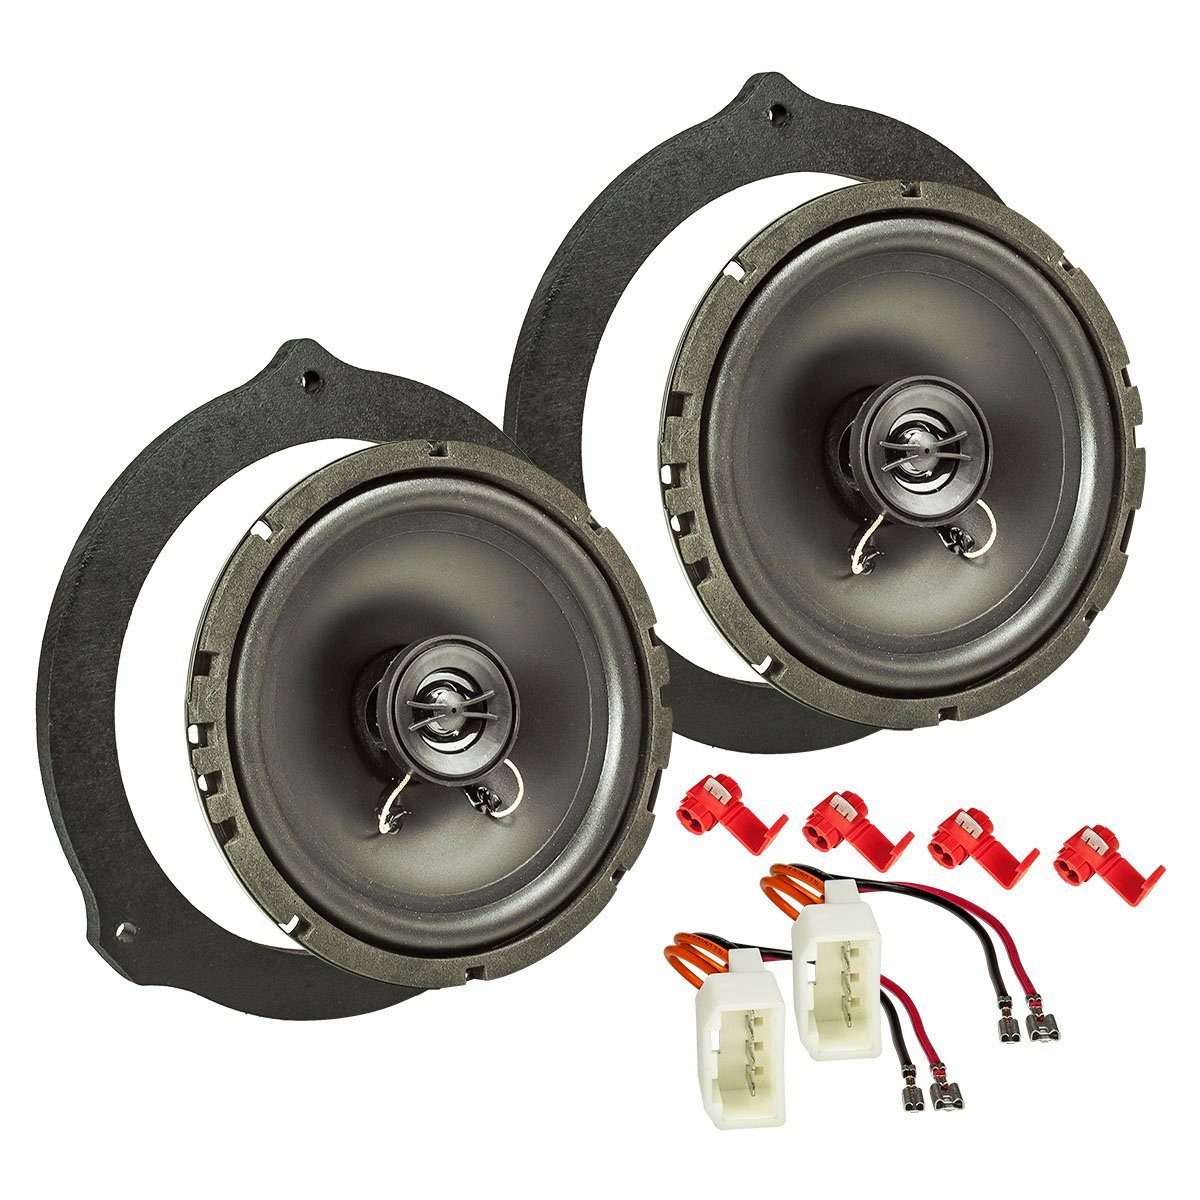 tomzz Audio Lautsprecher Einbau-Set MDF kompatibel mit Ford Auto-Lautsprecher  online kaufen | OTTO